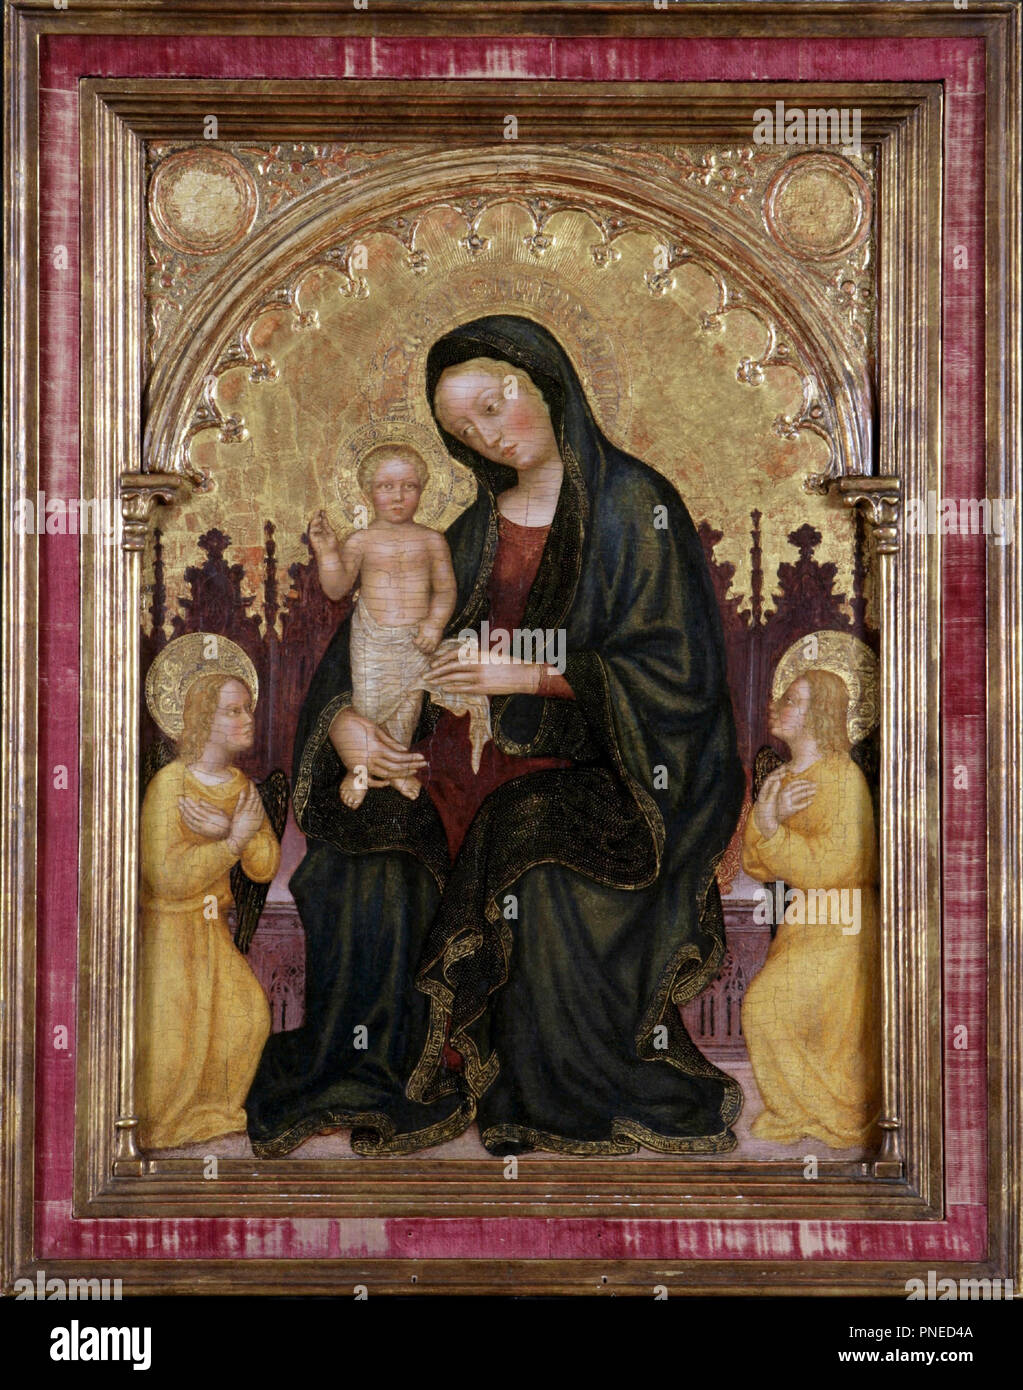 Madonna in trono con Bambino e due angeli. Data/Periodo: 1410. Tempera su pannello. Autore: Gentile da Fabriano. Foto Stock